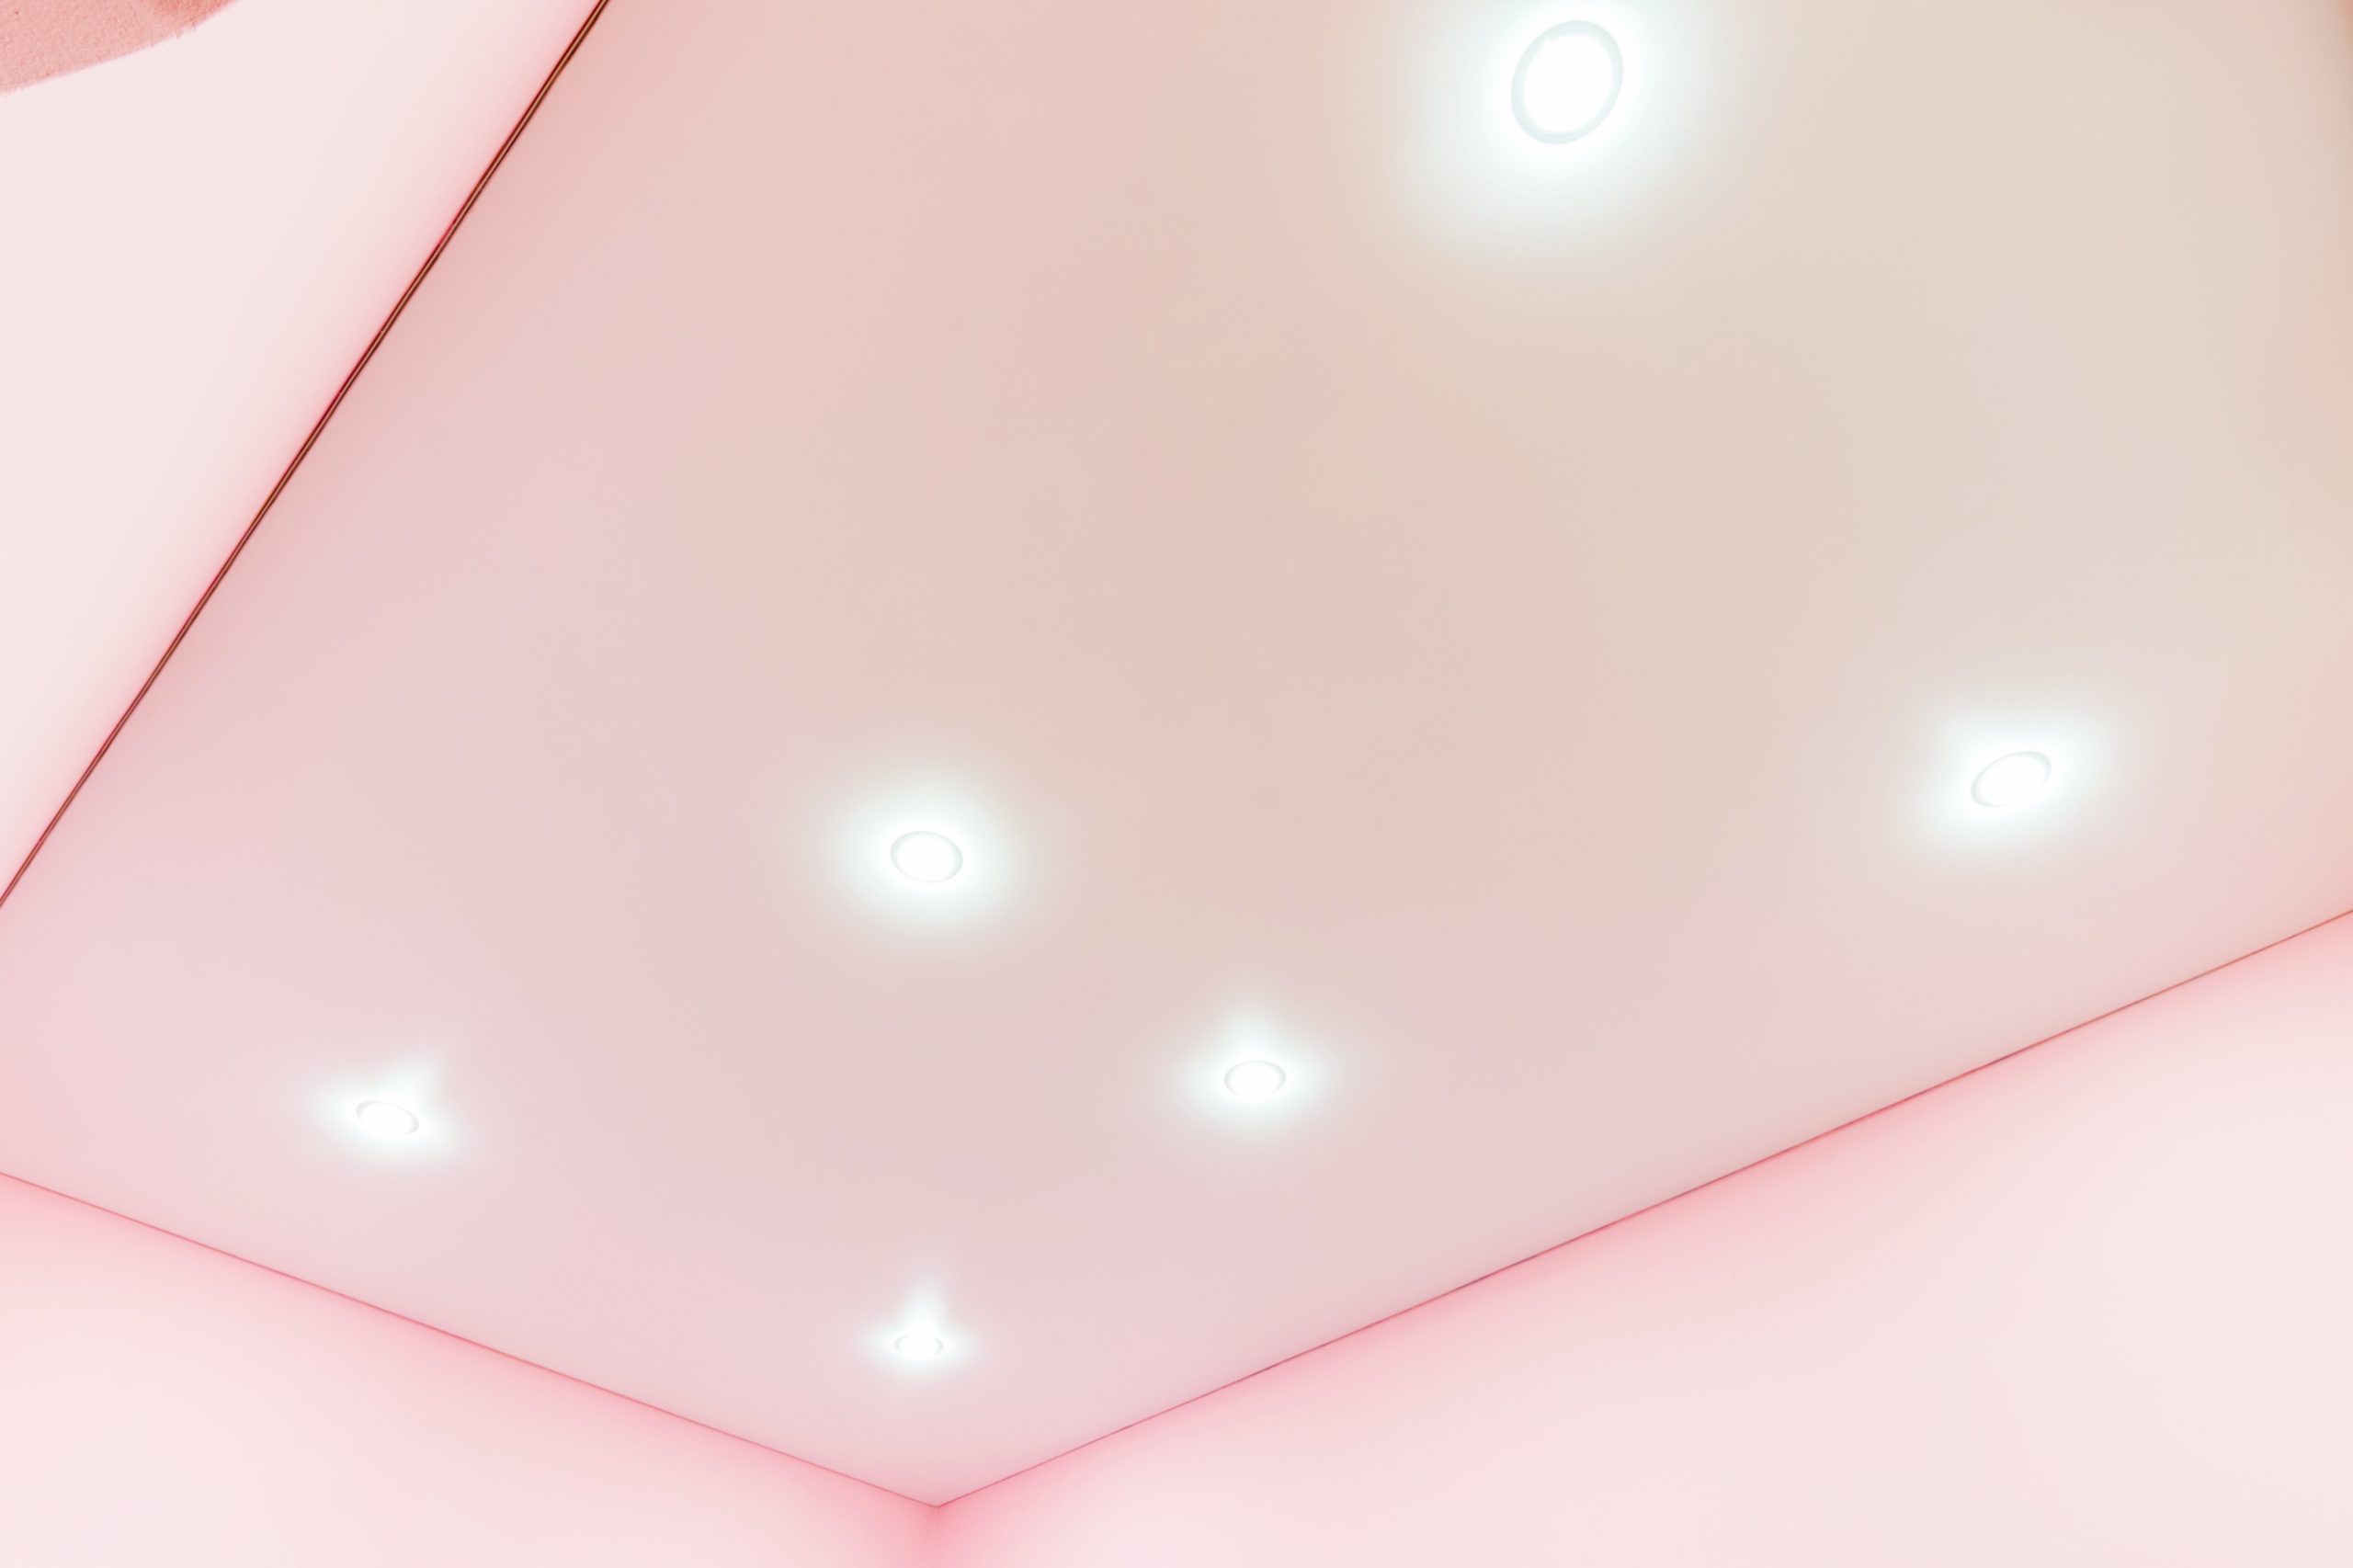 <img src="pink.jpg" alt="pink kitchen ceiling with LED lights"/> 